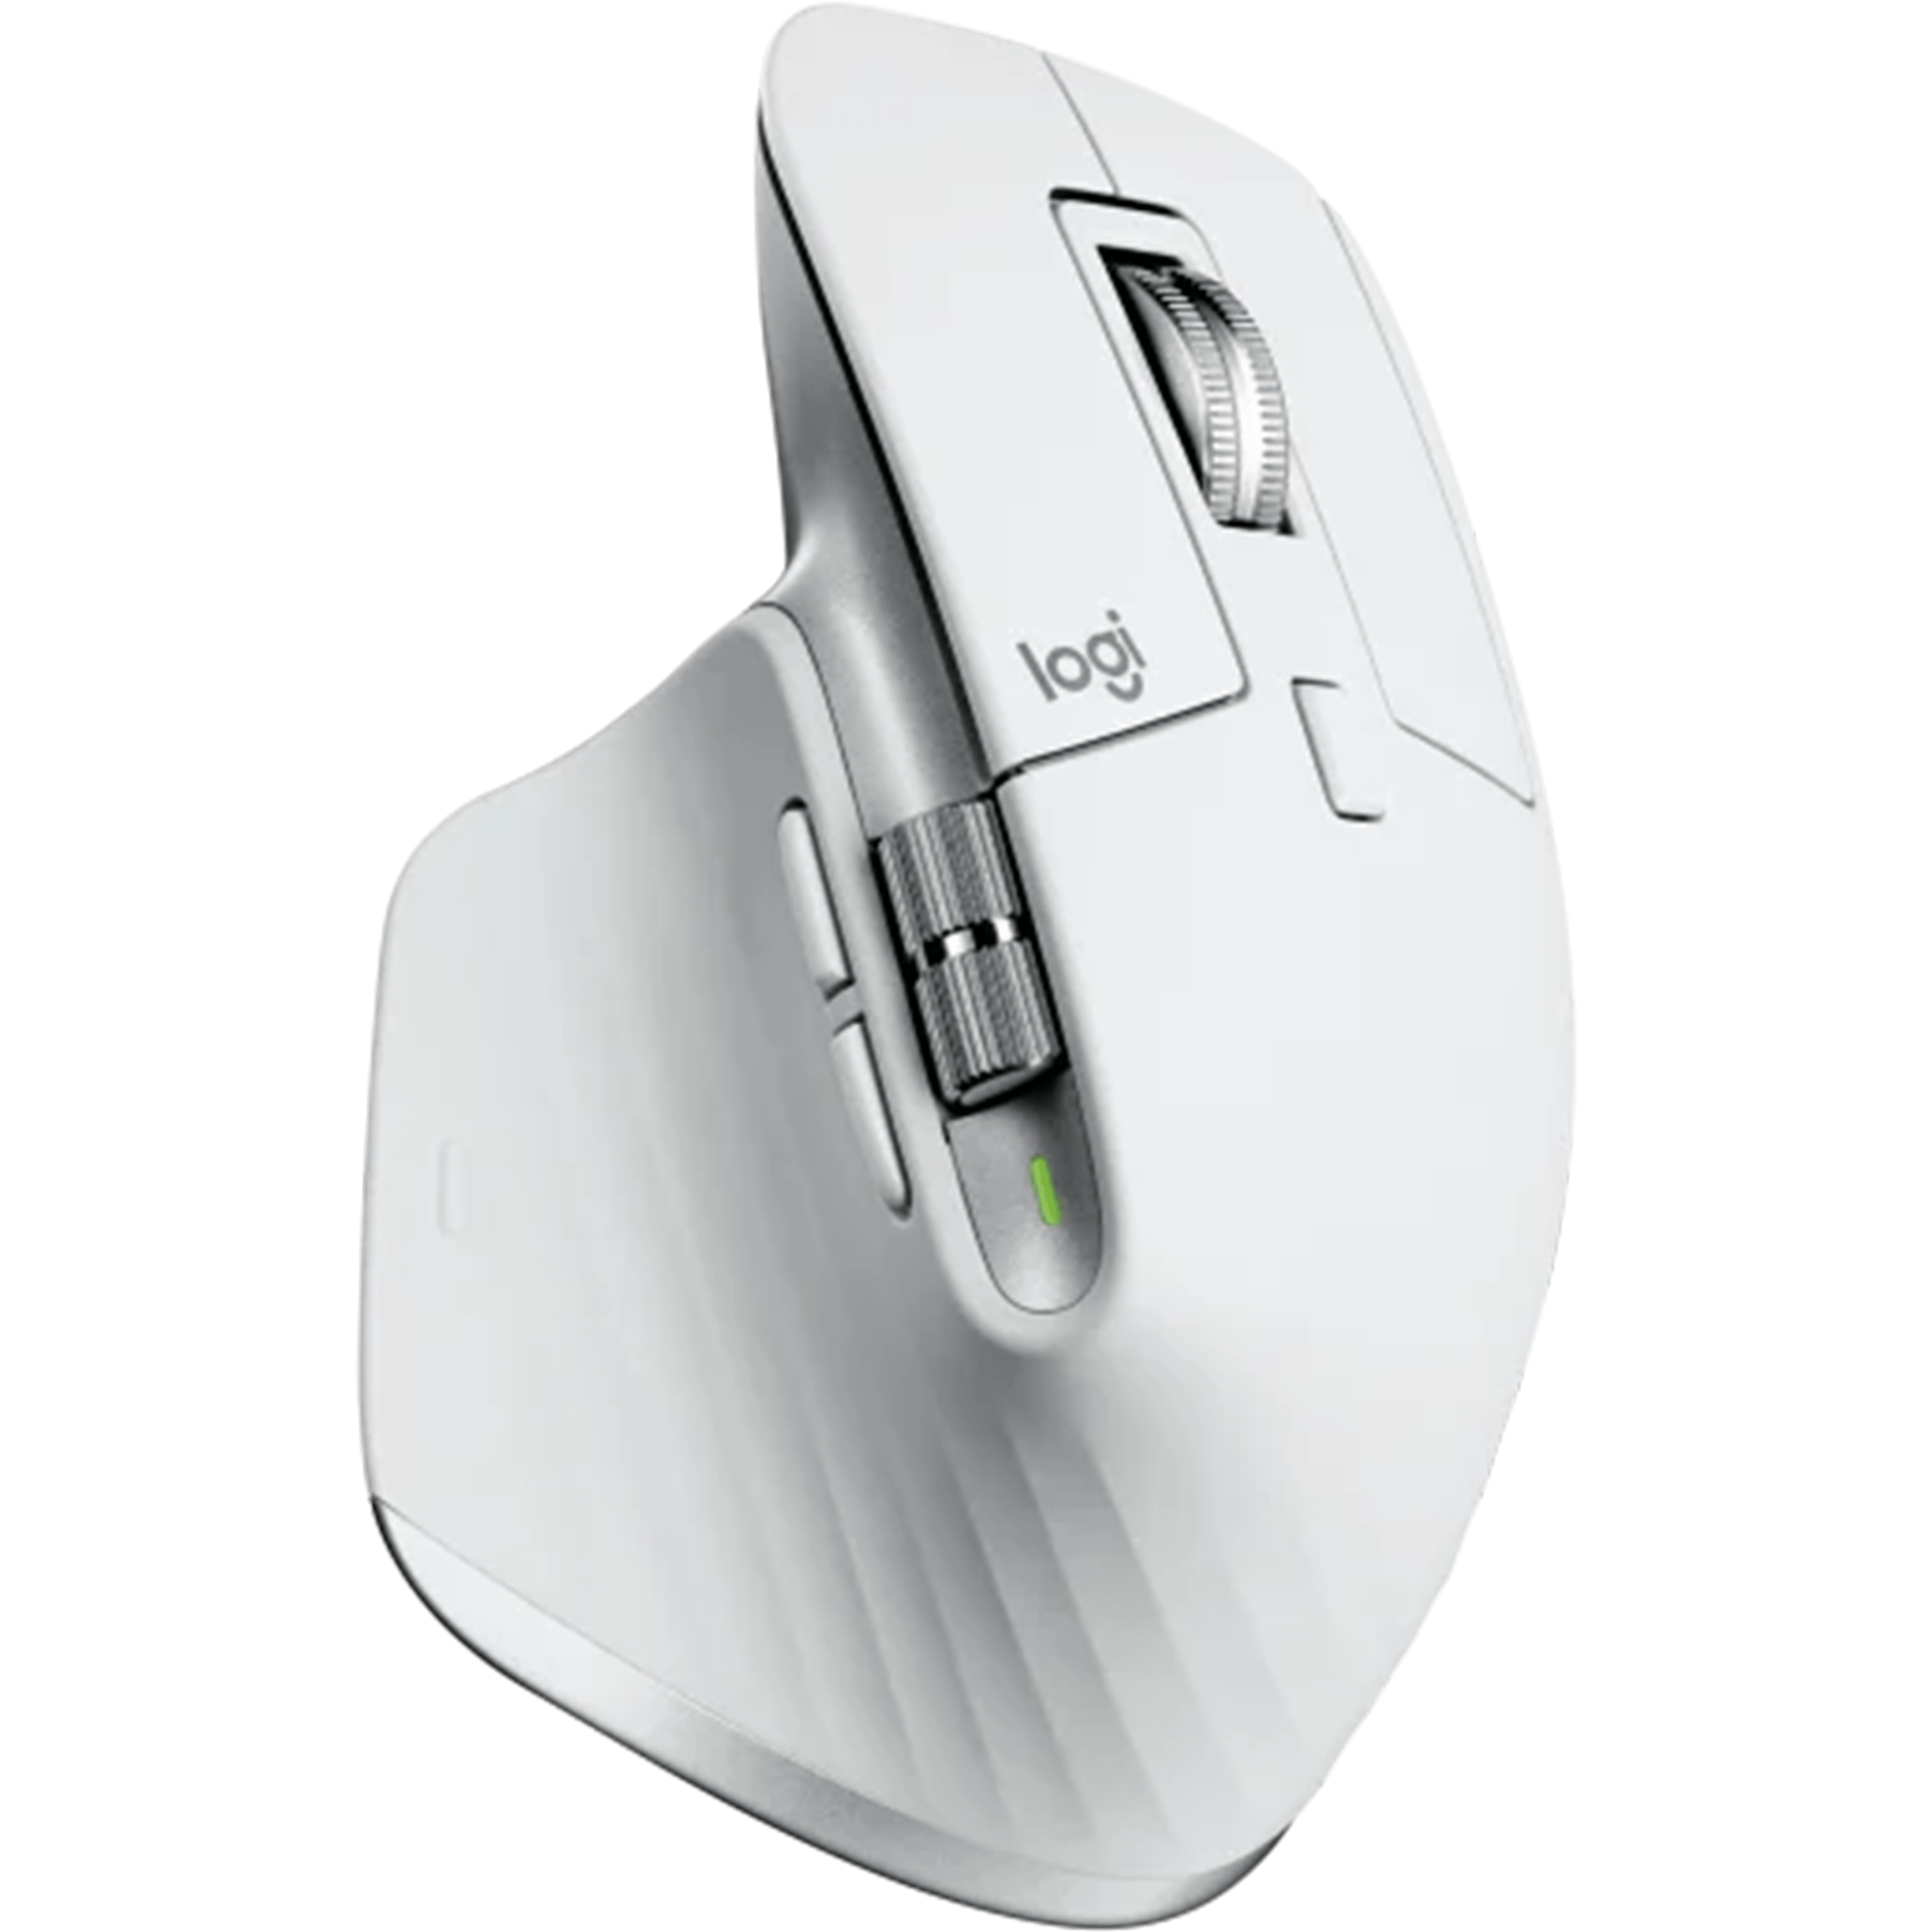 עכבר אלחוטי ארגונומי Logitech MX Master 3S USB-C - צבע אפור בהיר שנה אחריות ע